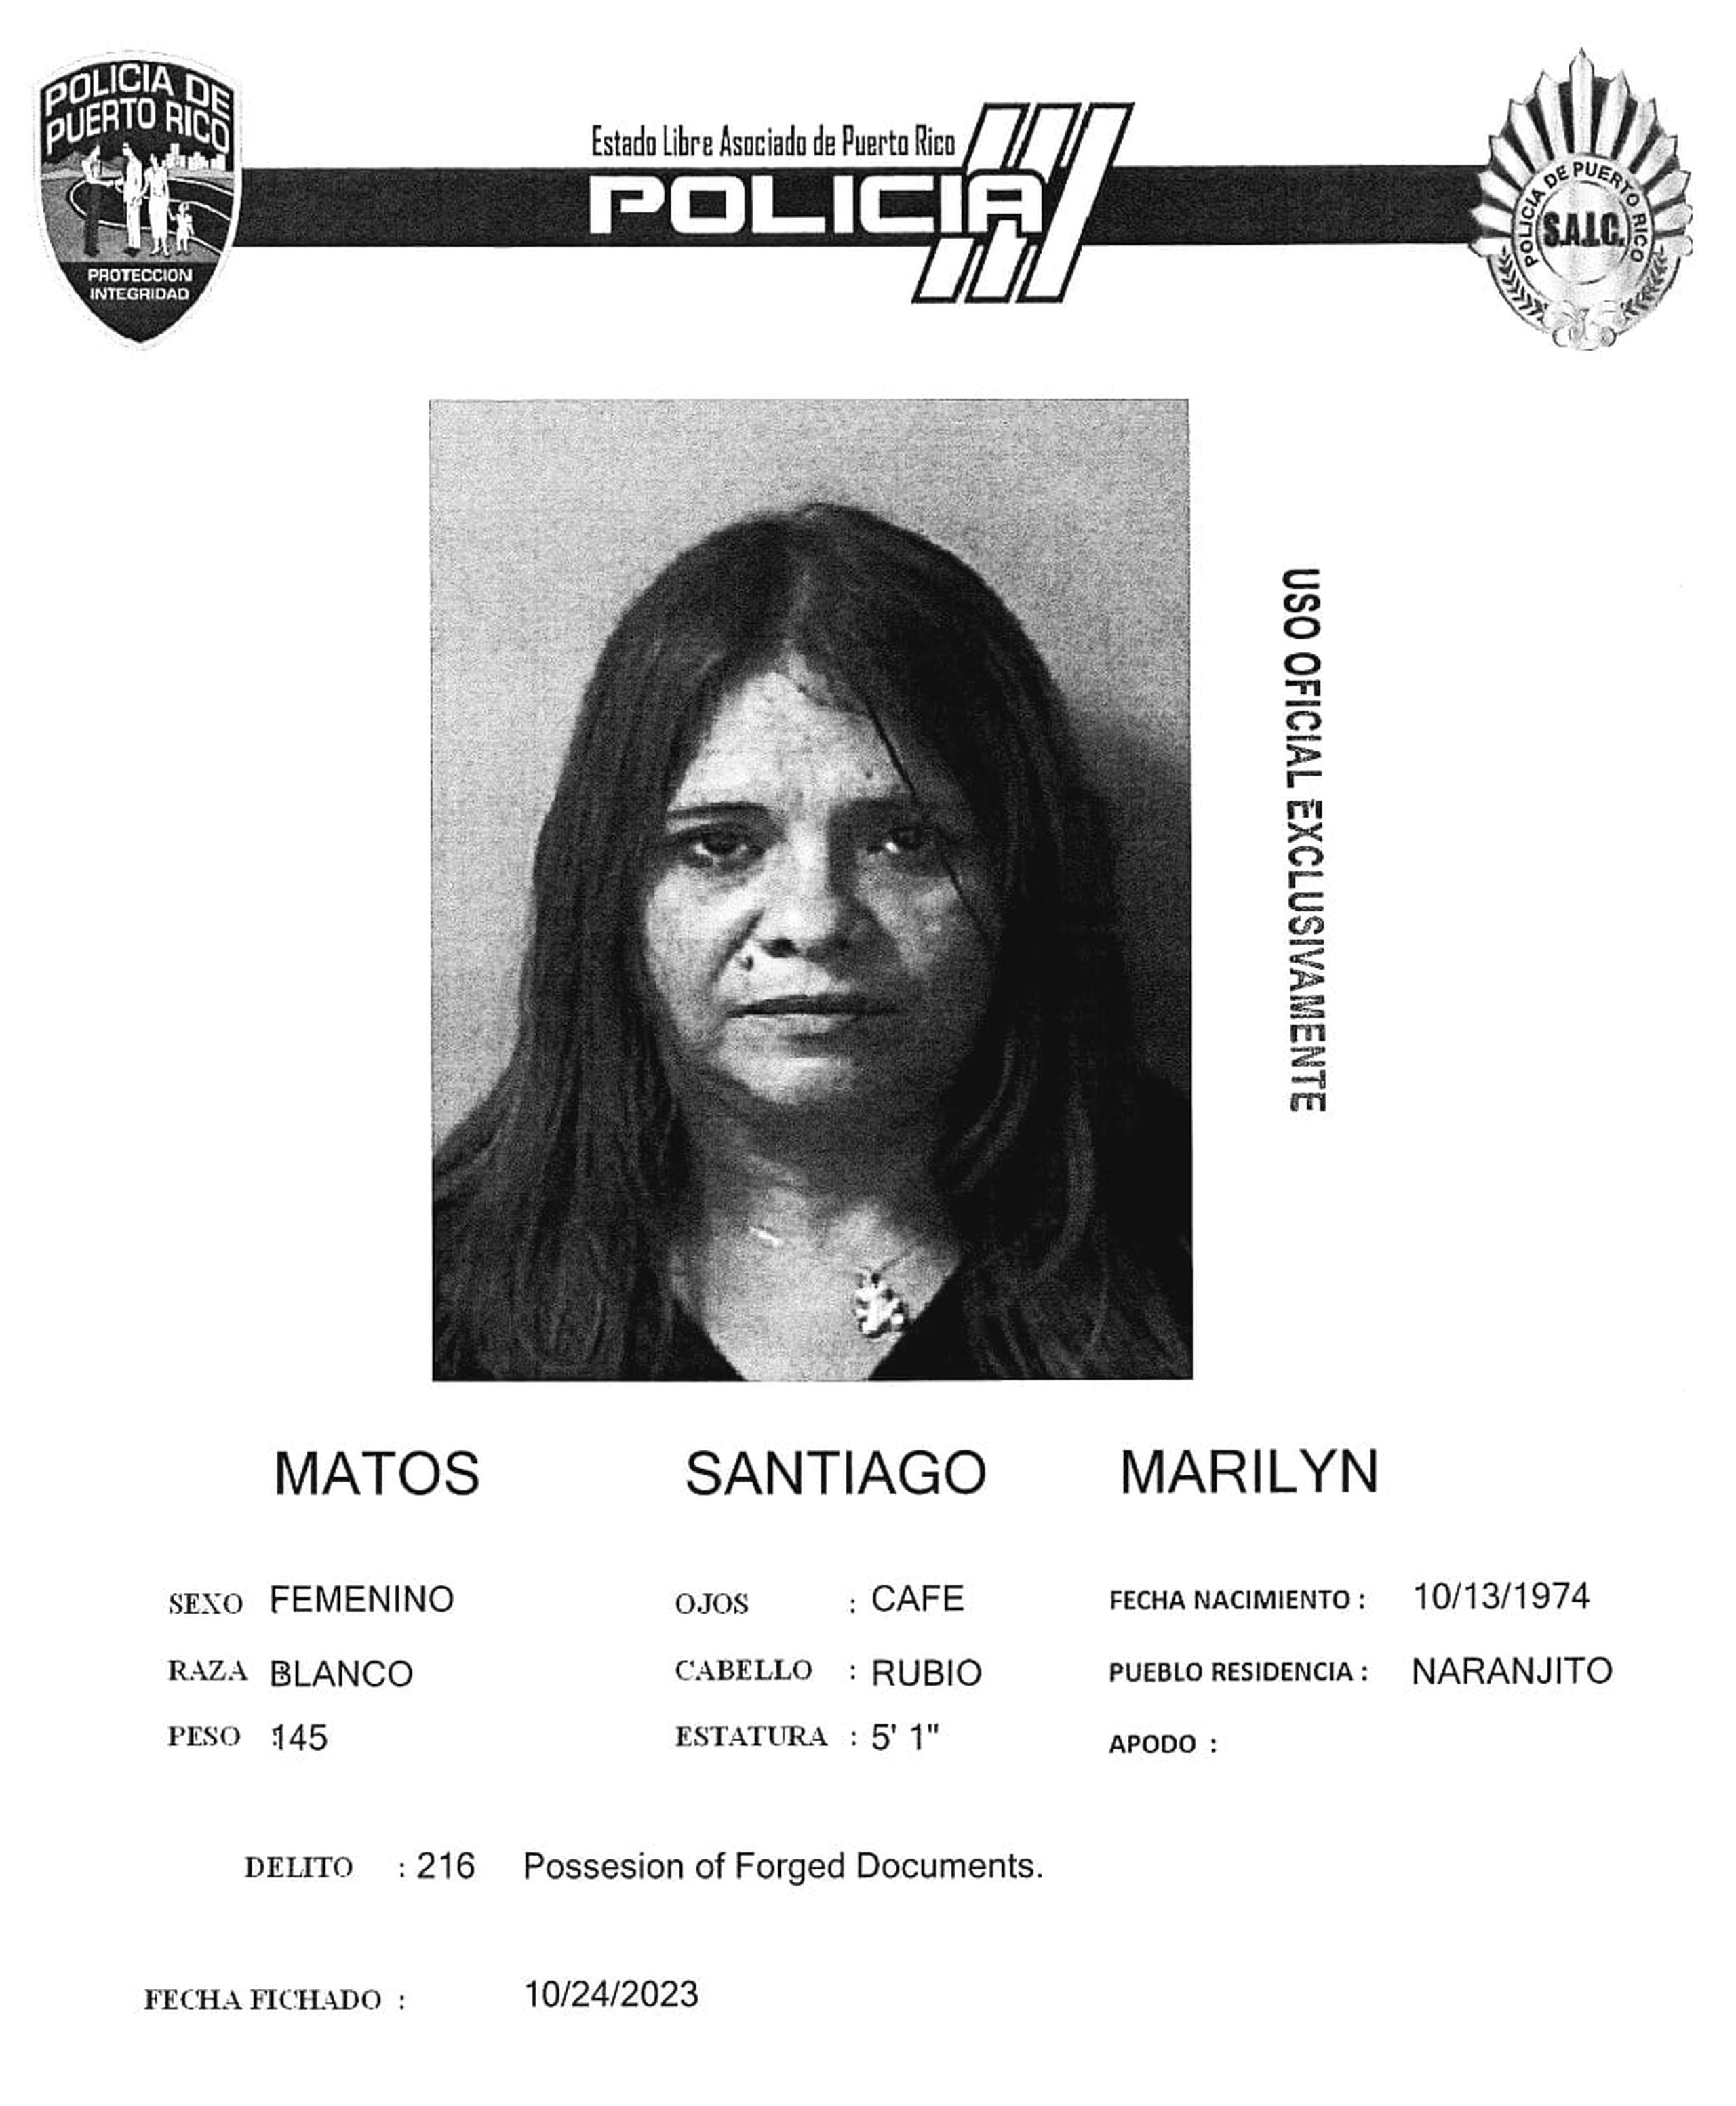 Marilyn Matos Santiago fue acusada por falsificación de recetas para adquirir medicamentos controlados, entre otros delitos.